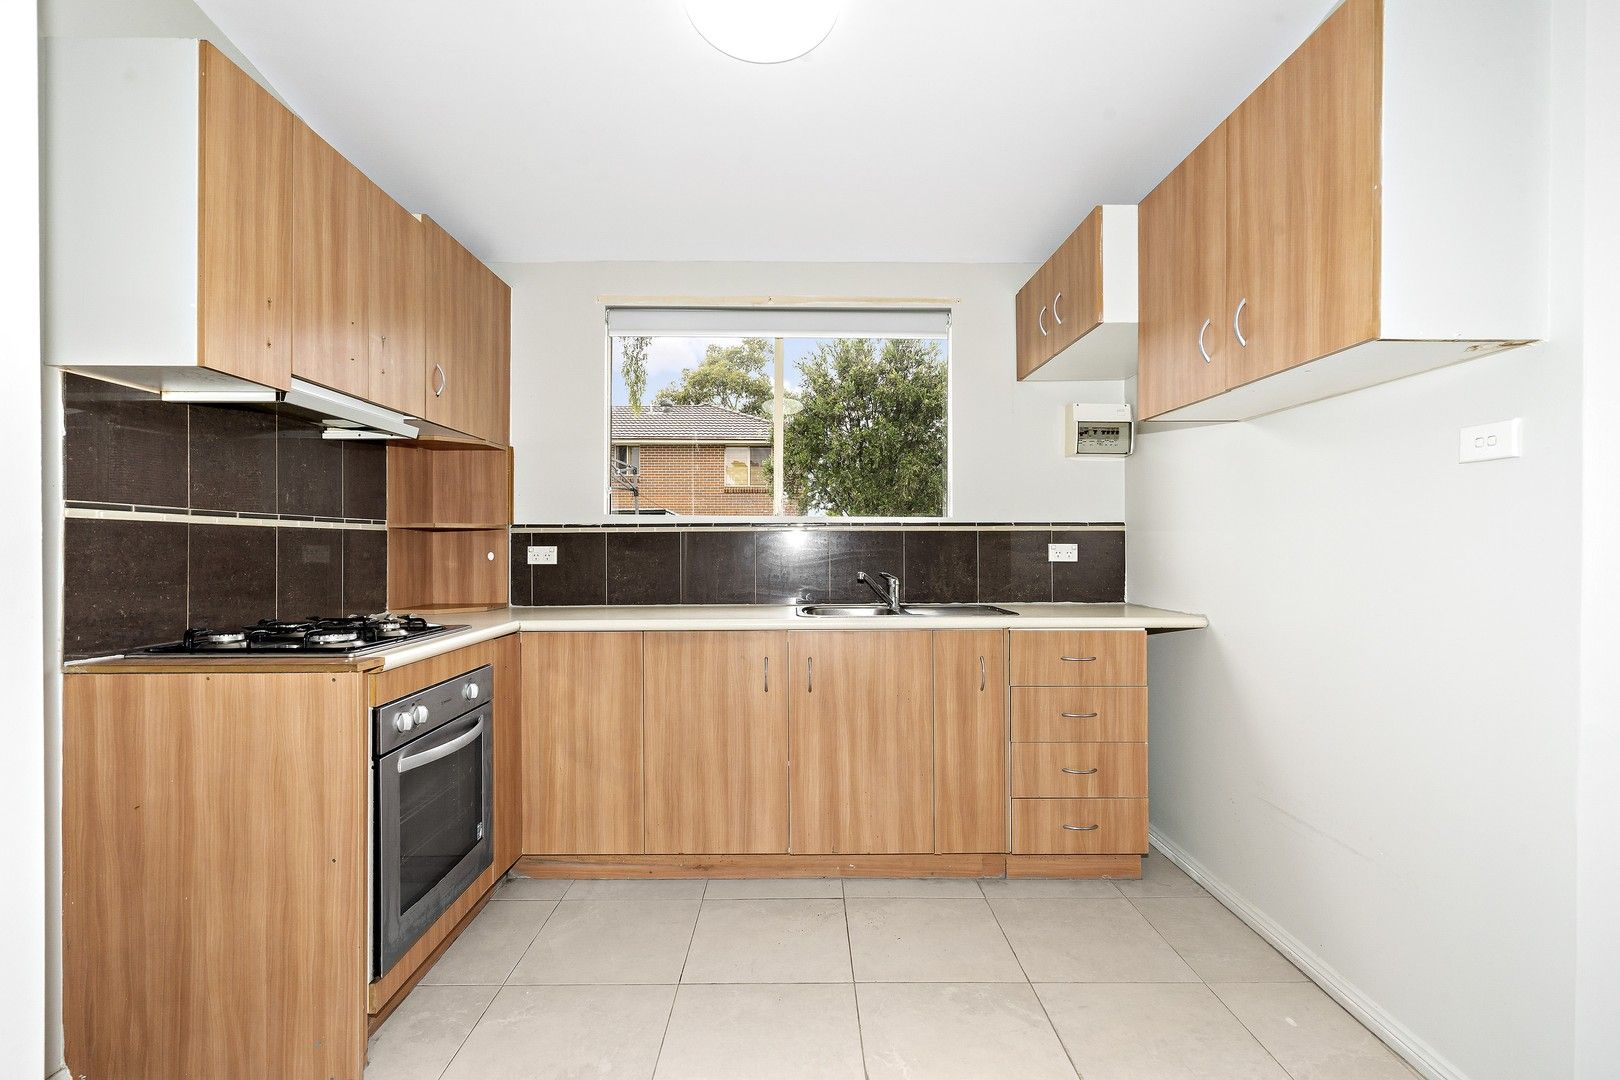 1 bedrooms Studio in 1a Power Street DOONSIDE NSW, 2767